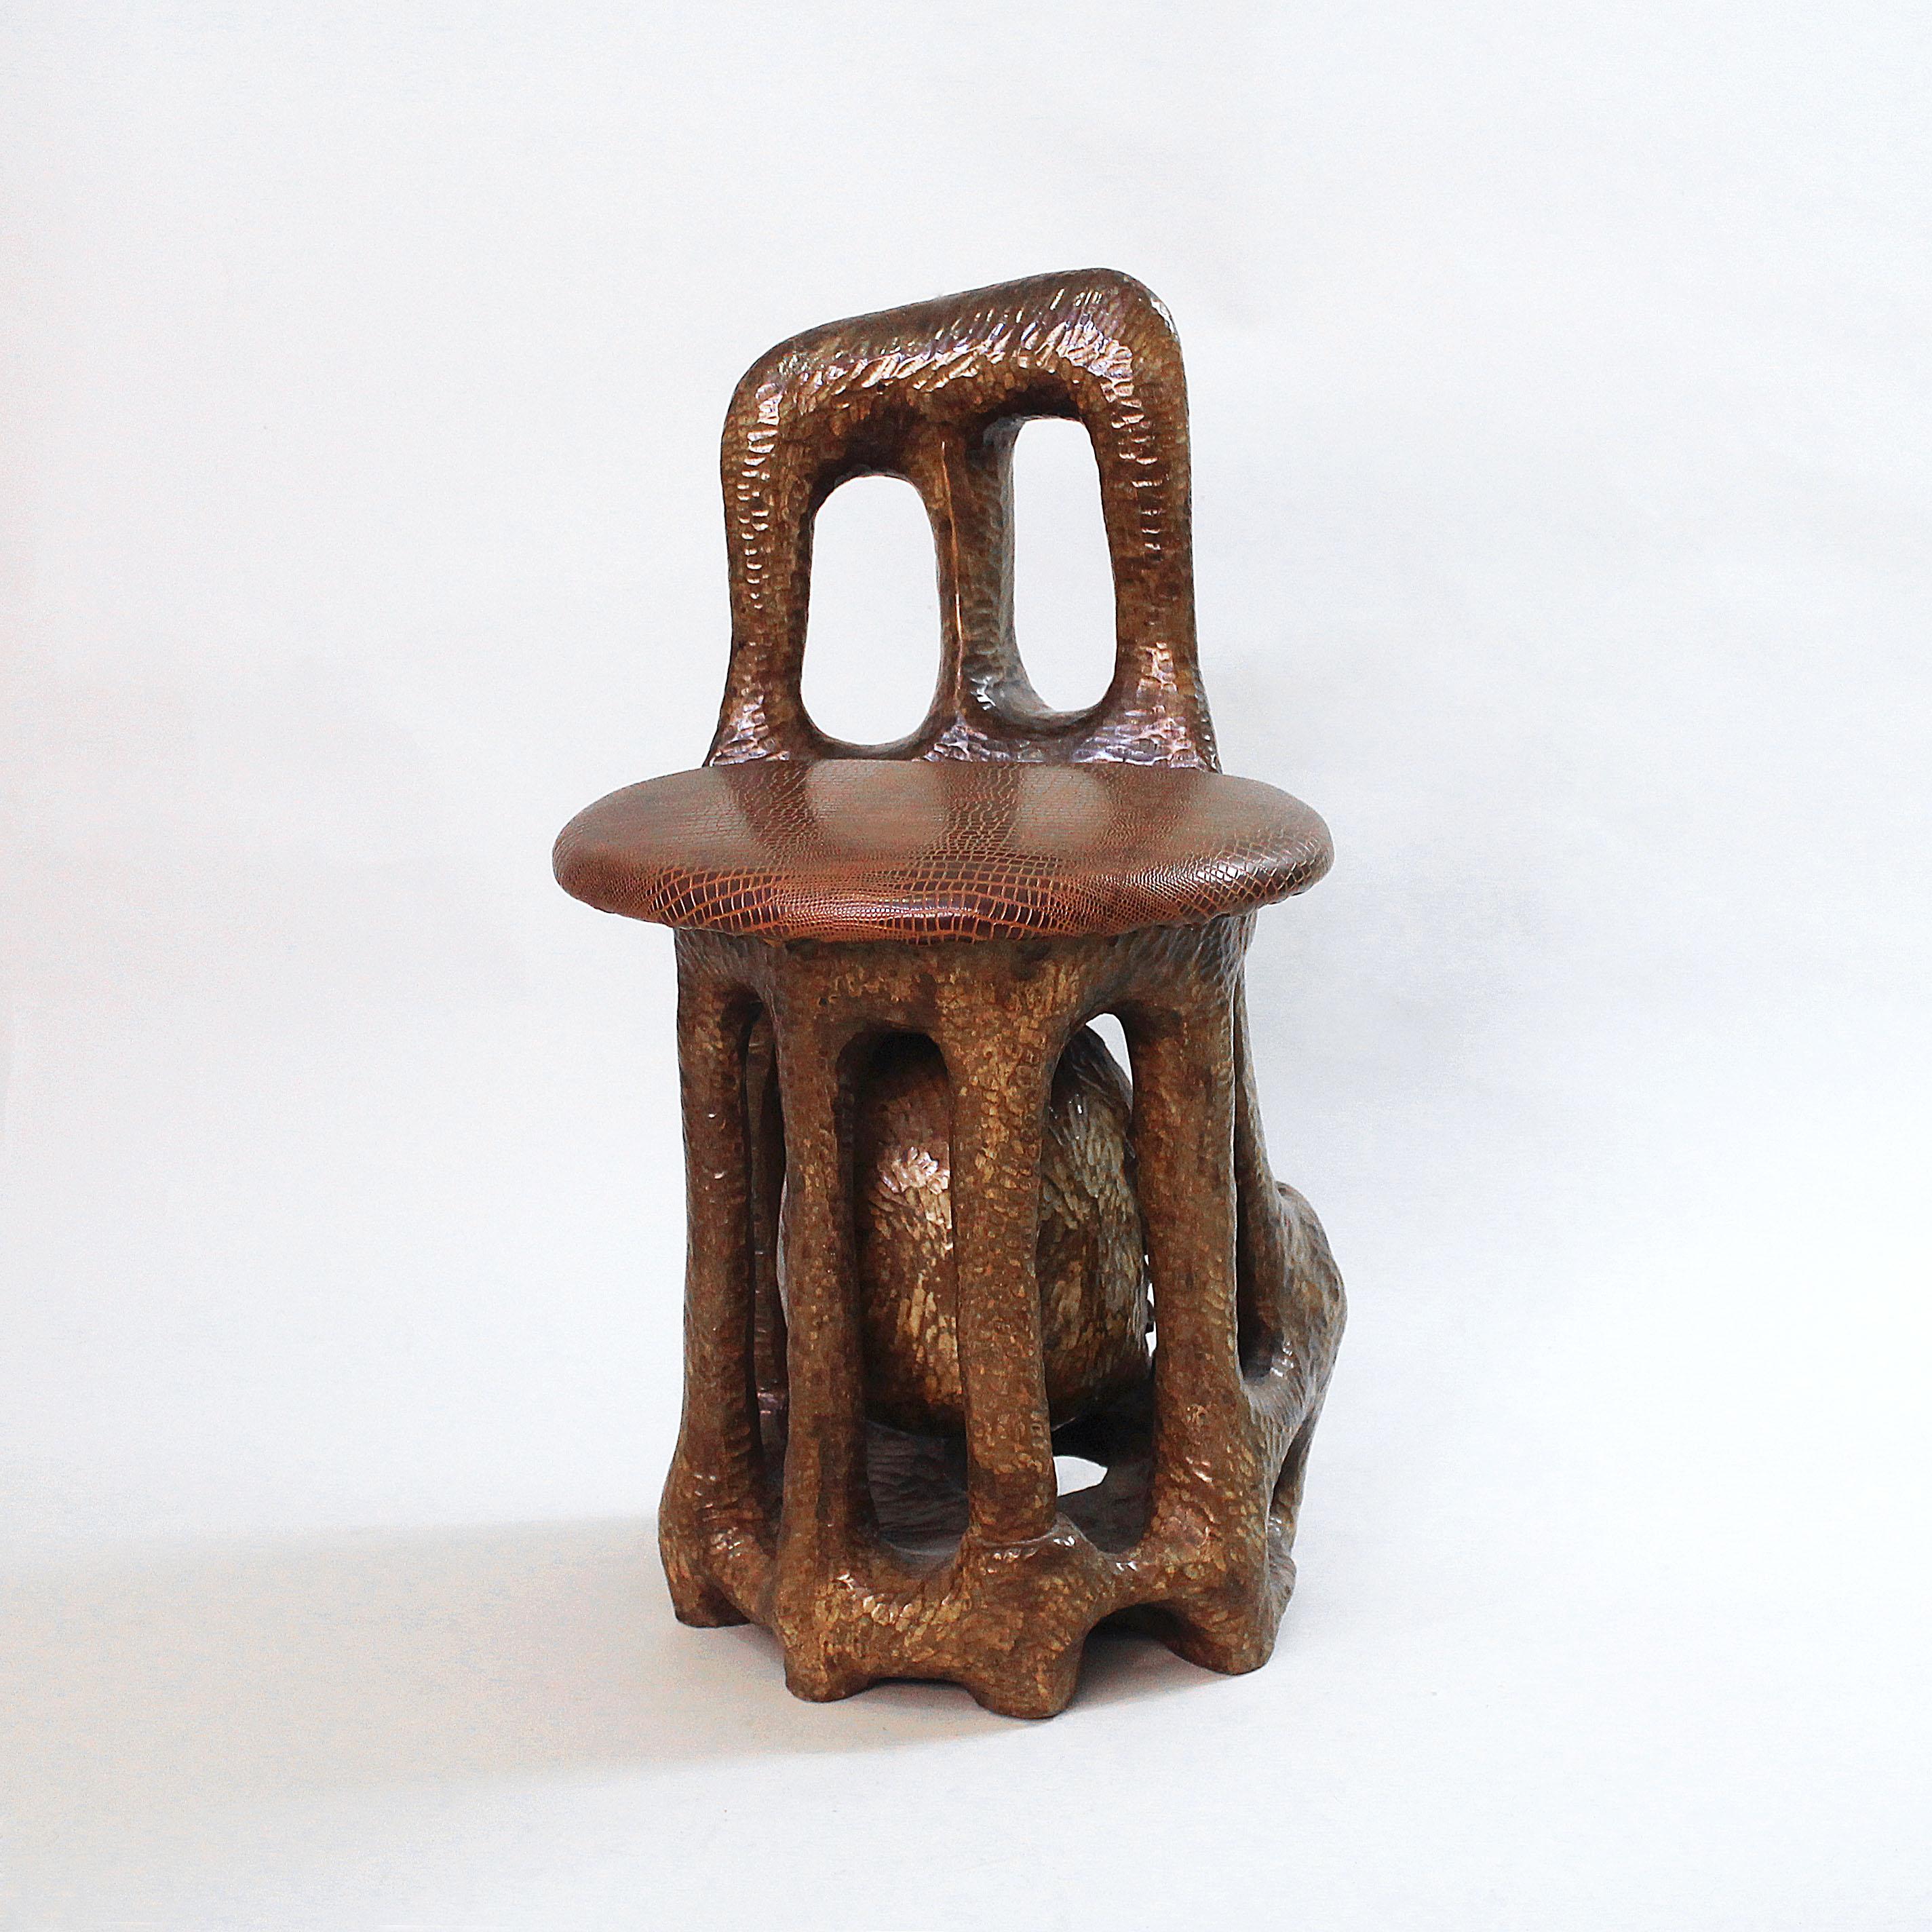 Hand-Carved Sol Garson Signed Sculptural Chair 1970s Art Hand Carved Wood Sculpture Mandela For Sale